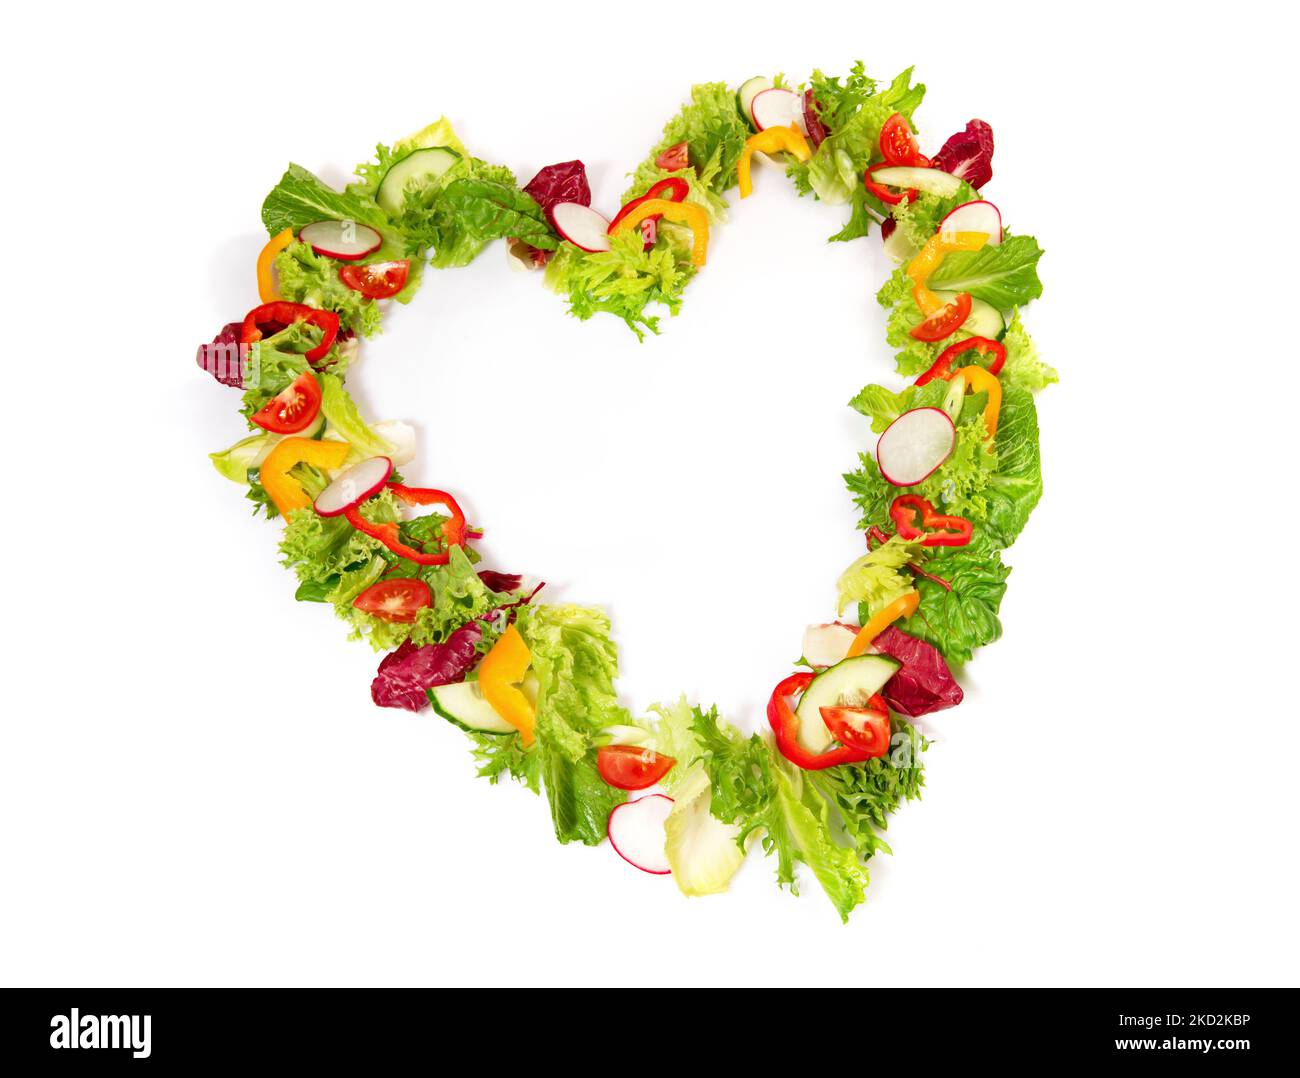 Mixed Salad Heart Shape isolated on white Background Stock Photo